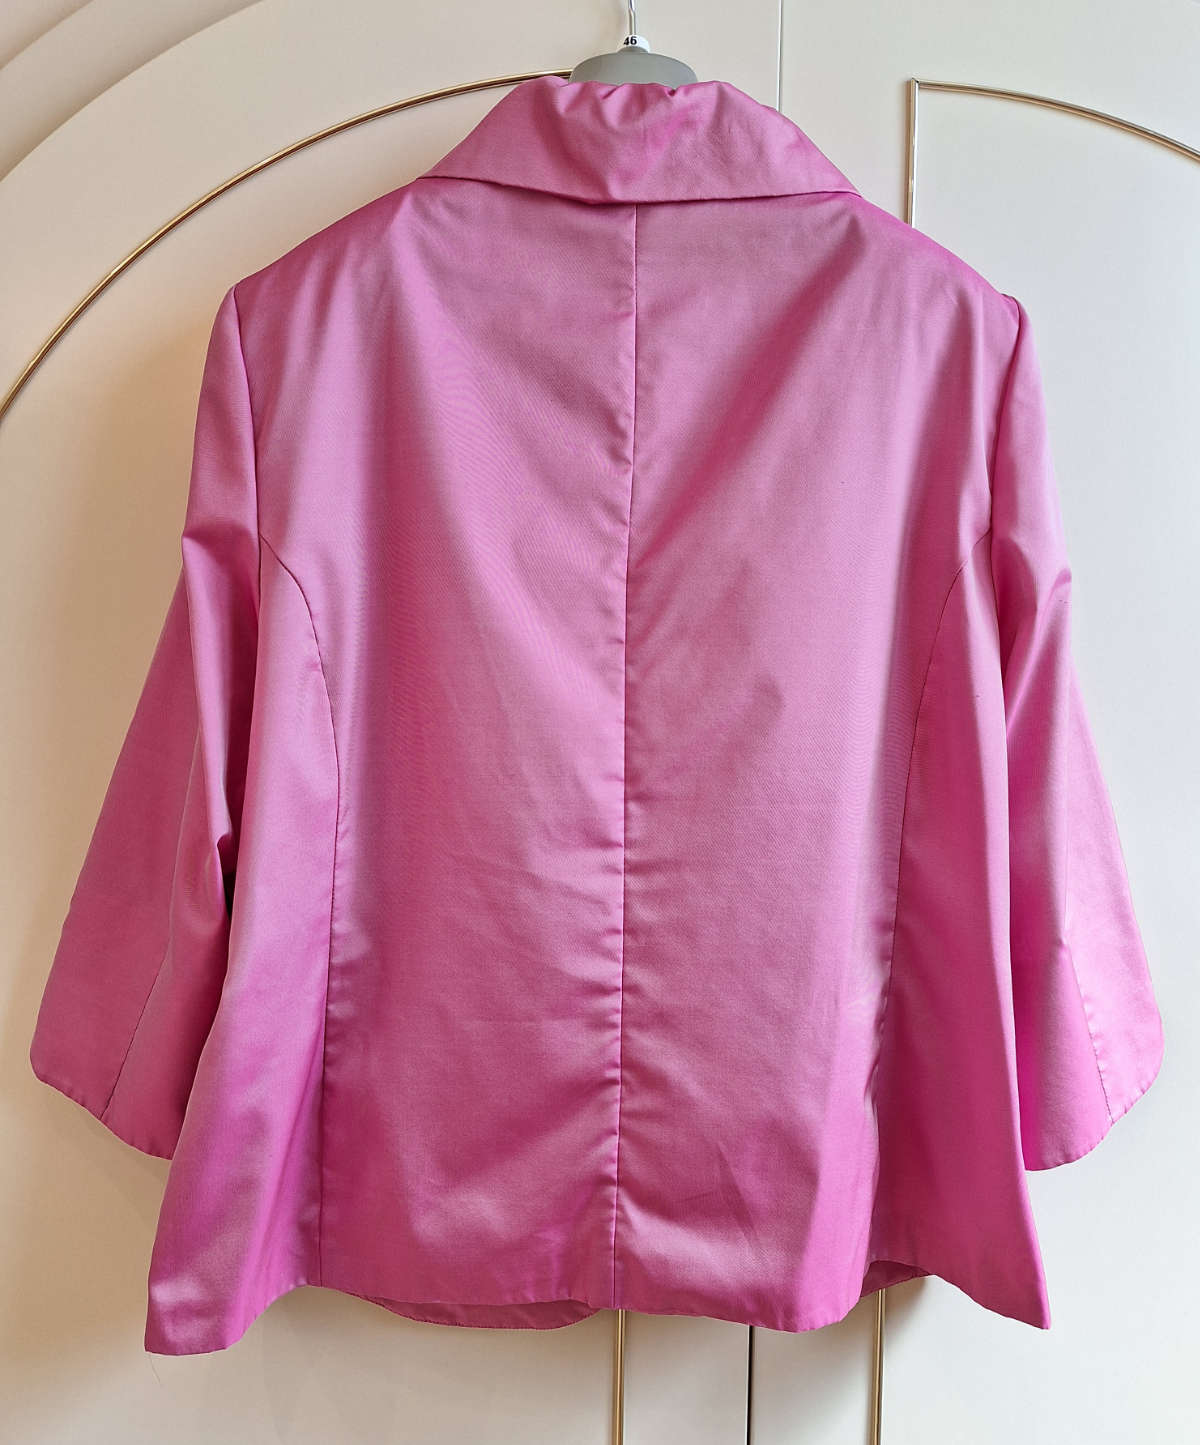 Select Damen-Blazer, in pink, Größe 46, mit Rüschen, Dreiviertelarm, von hinten.